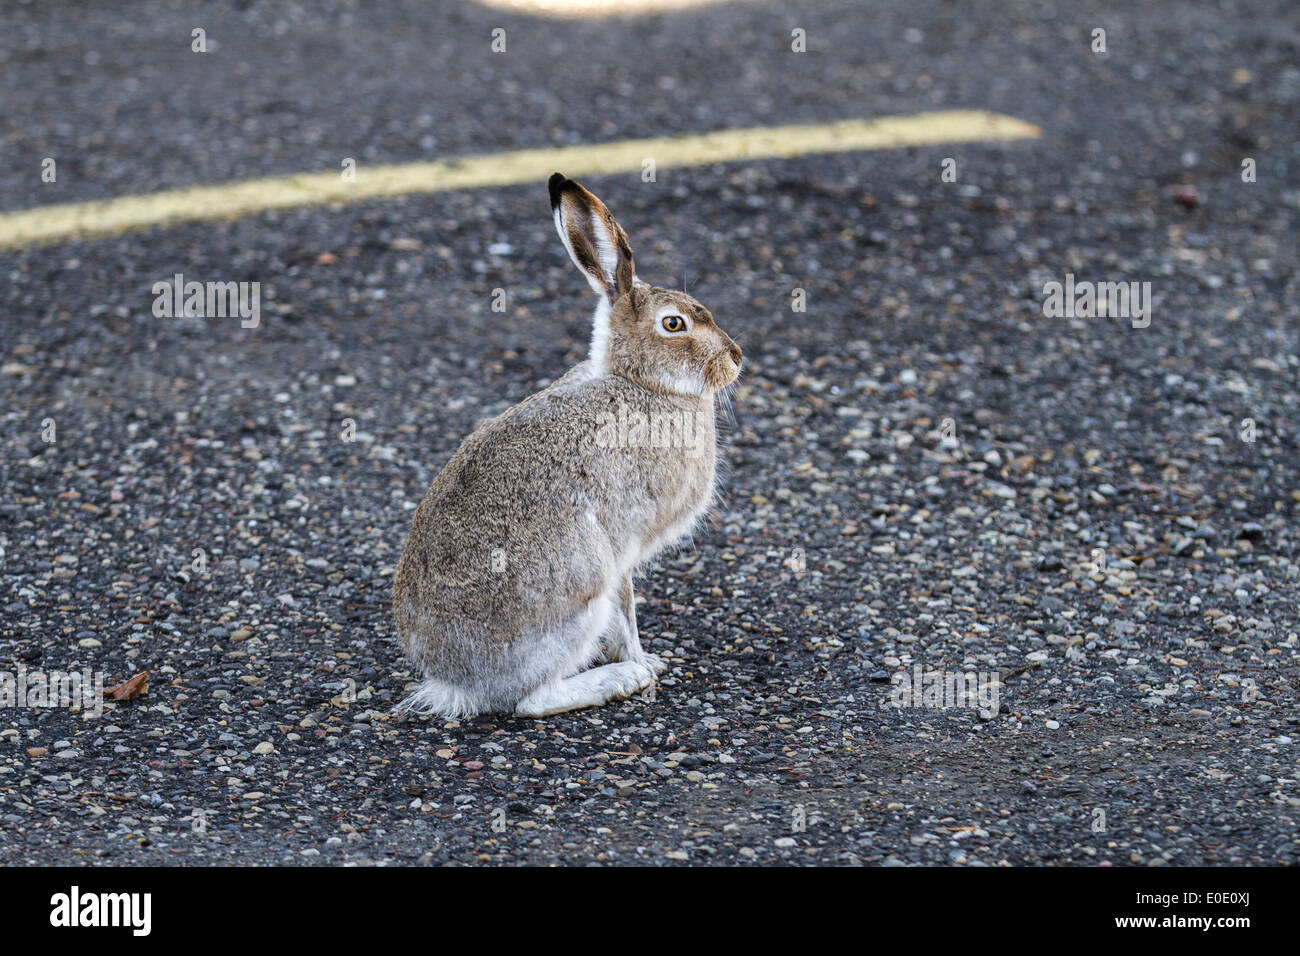 Coniglio silvilago (Sylvilagus floridanus) seduto in stato di allerta con le orecchie in rilievo, in città parcheggio, Calgary, Alberta, Canada Foto Stock